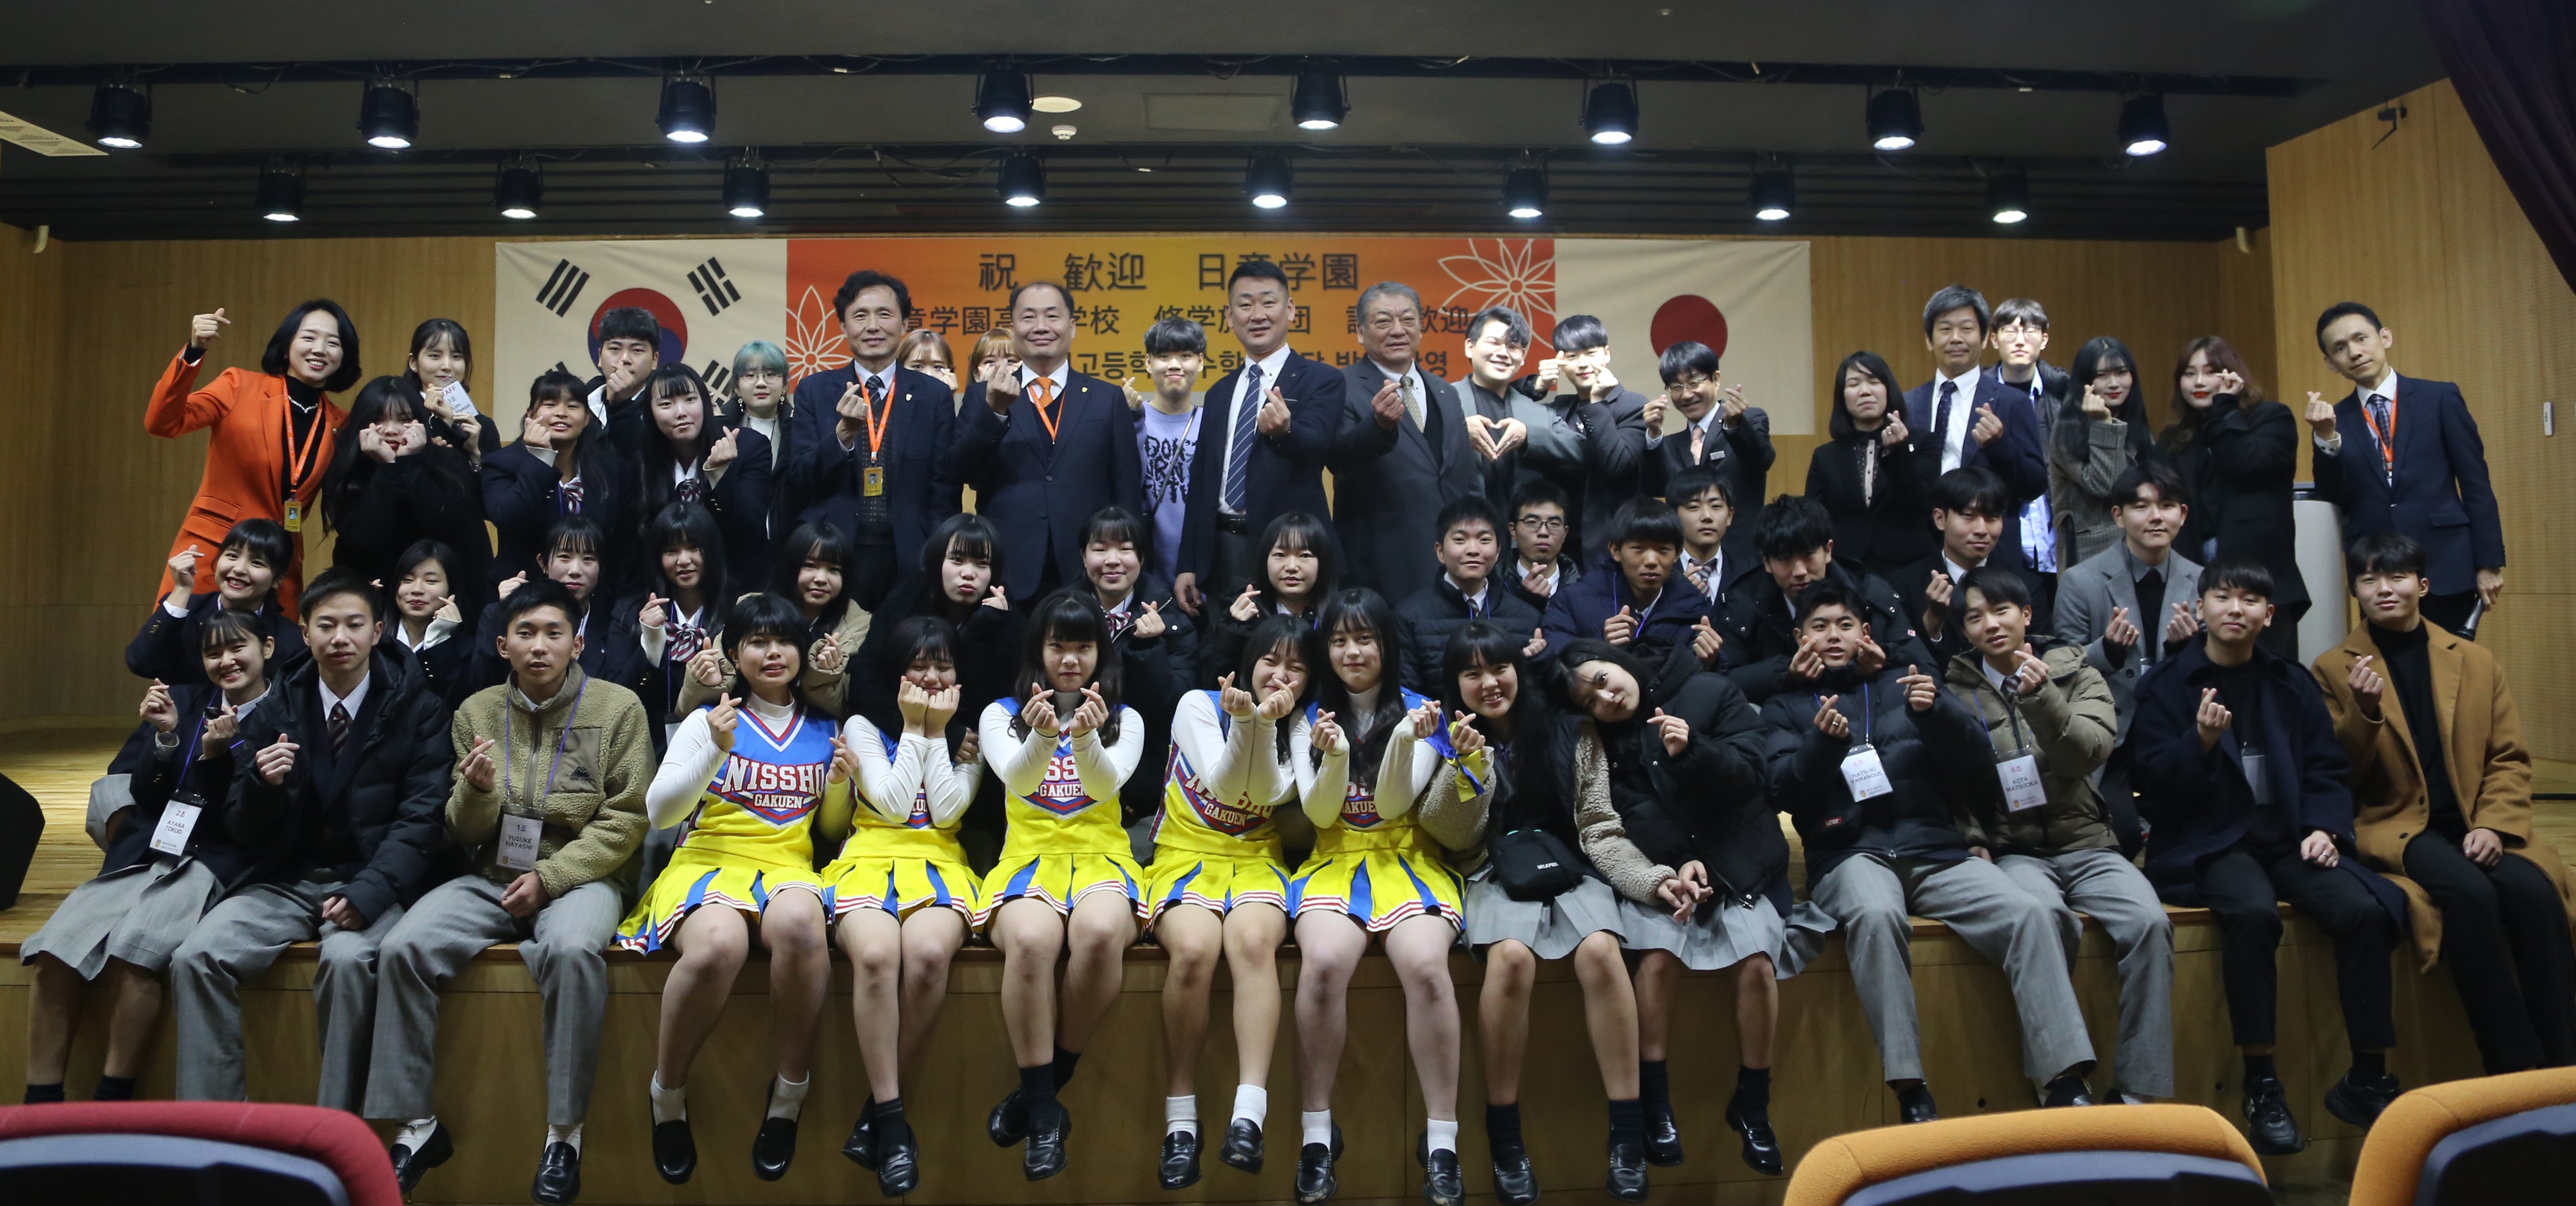 일본 일장학원 고등학교 수학여행단, 부천대학교 방문